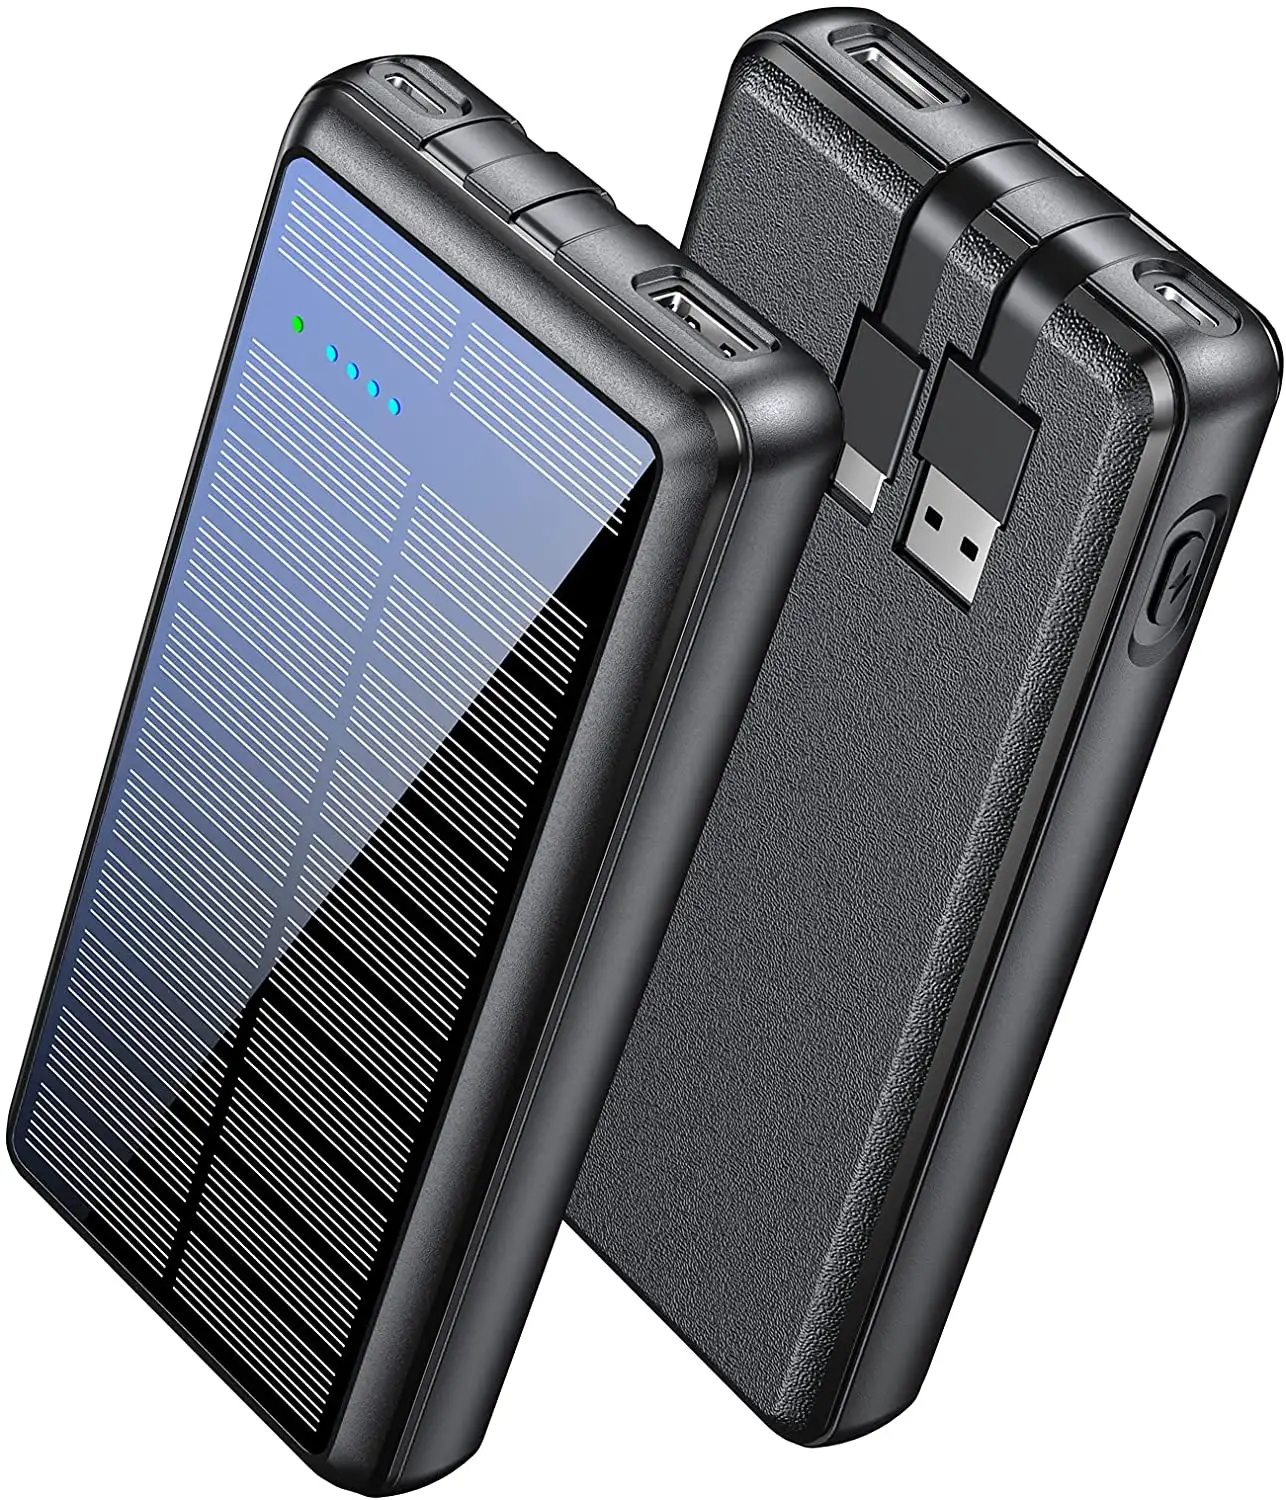 Pronto Stock per la spedizione Slim Thin 3A batteria ad alta velocità caricabatterie portatile USB A Input Type C Power Bank